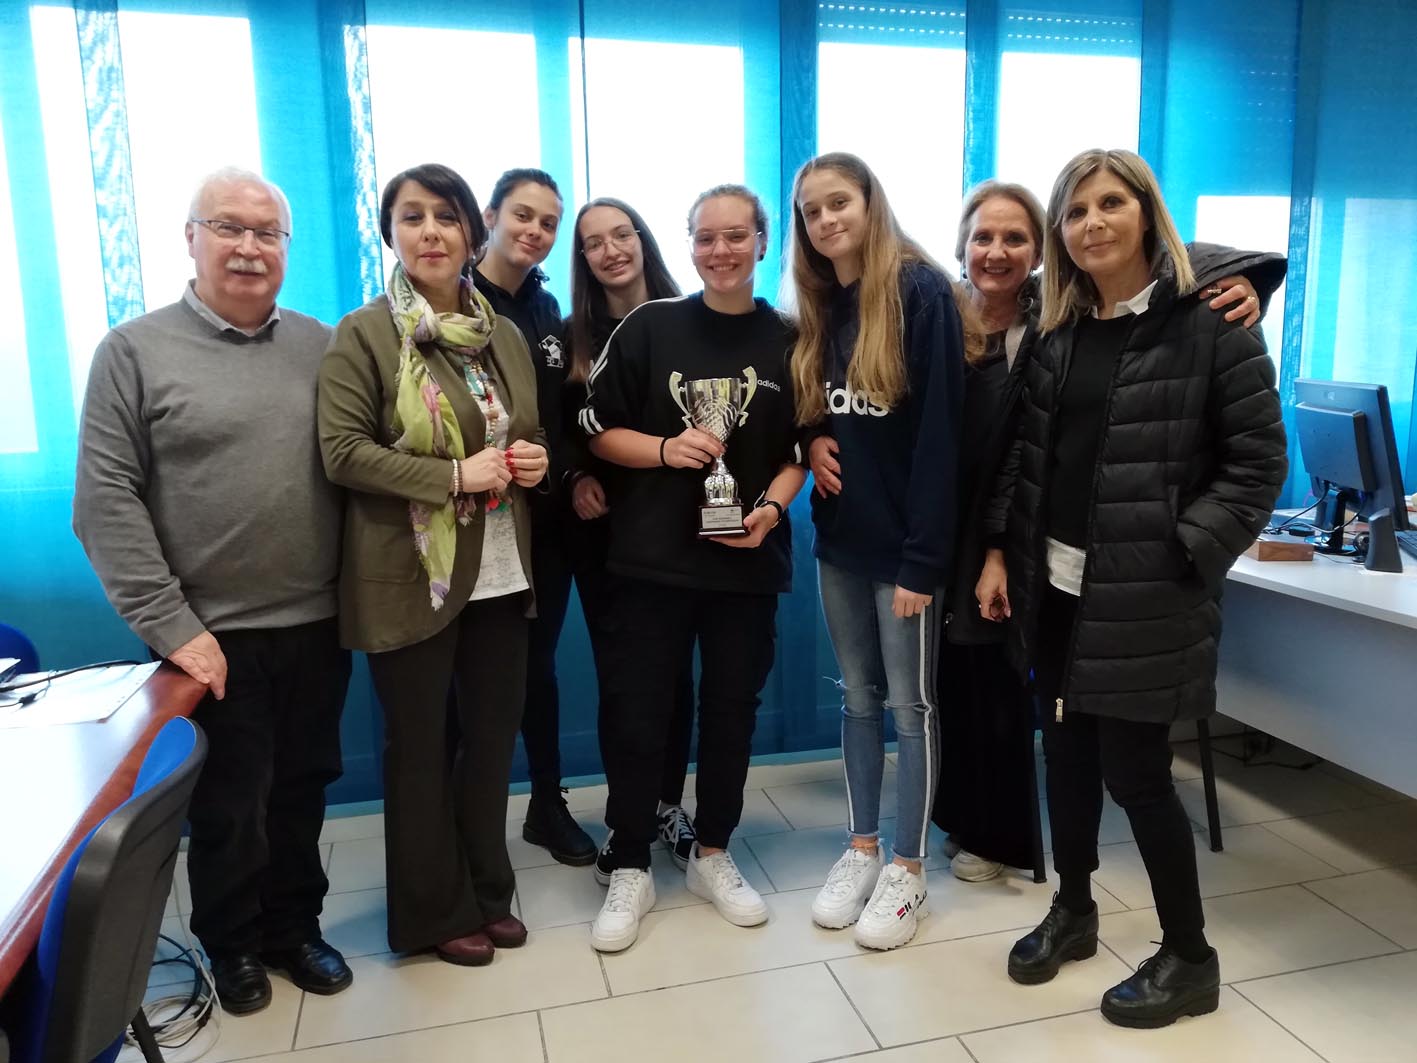 Benevento| Basket 3×3, secondo posto per la squadra femminile del Liceo Guacci al campionato studentesco regionale